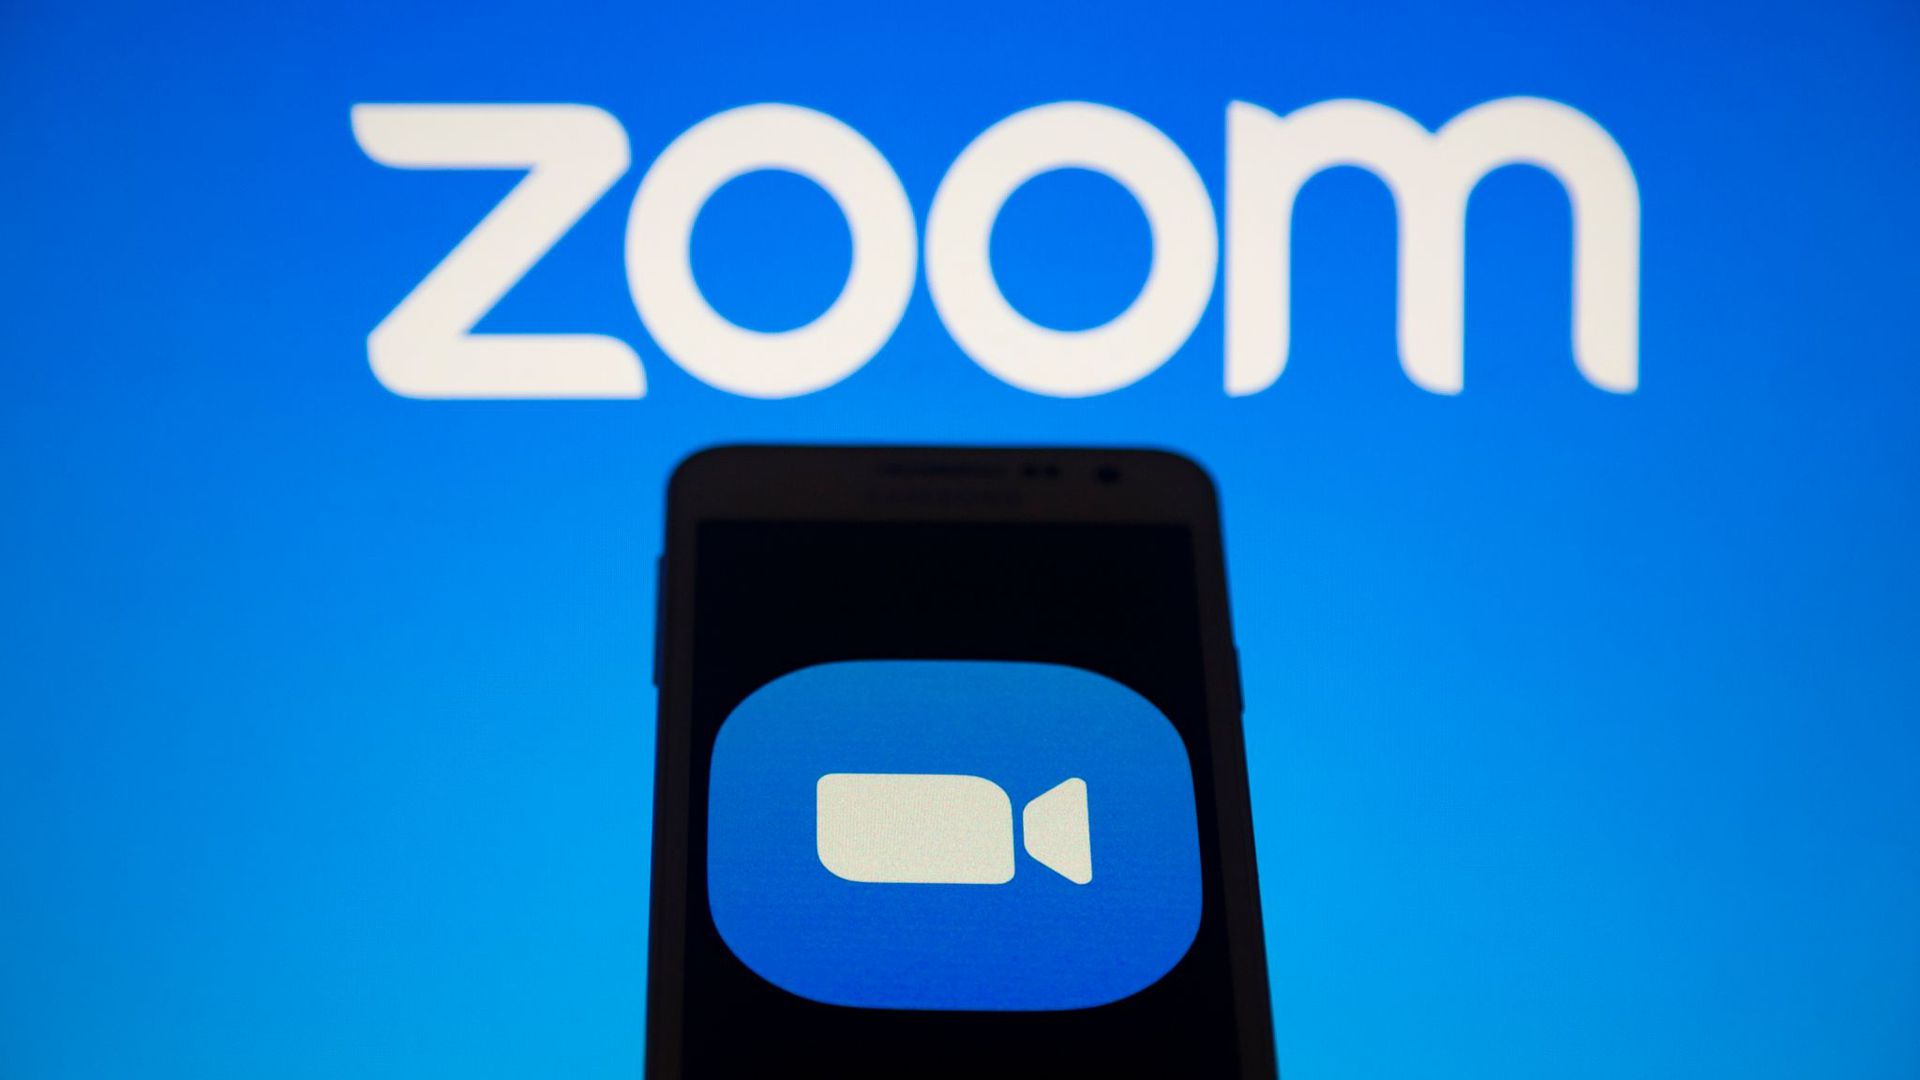 Der Videokonferenz-Dienst Zoom will seine Kassen über ein Aktienangebot im Wert von mindestens 1,5 Milliarden Dollar füllen.